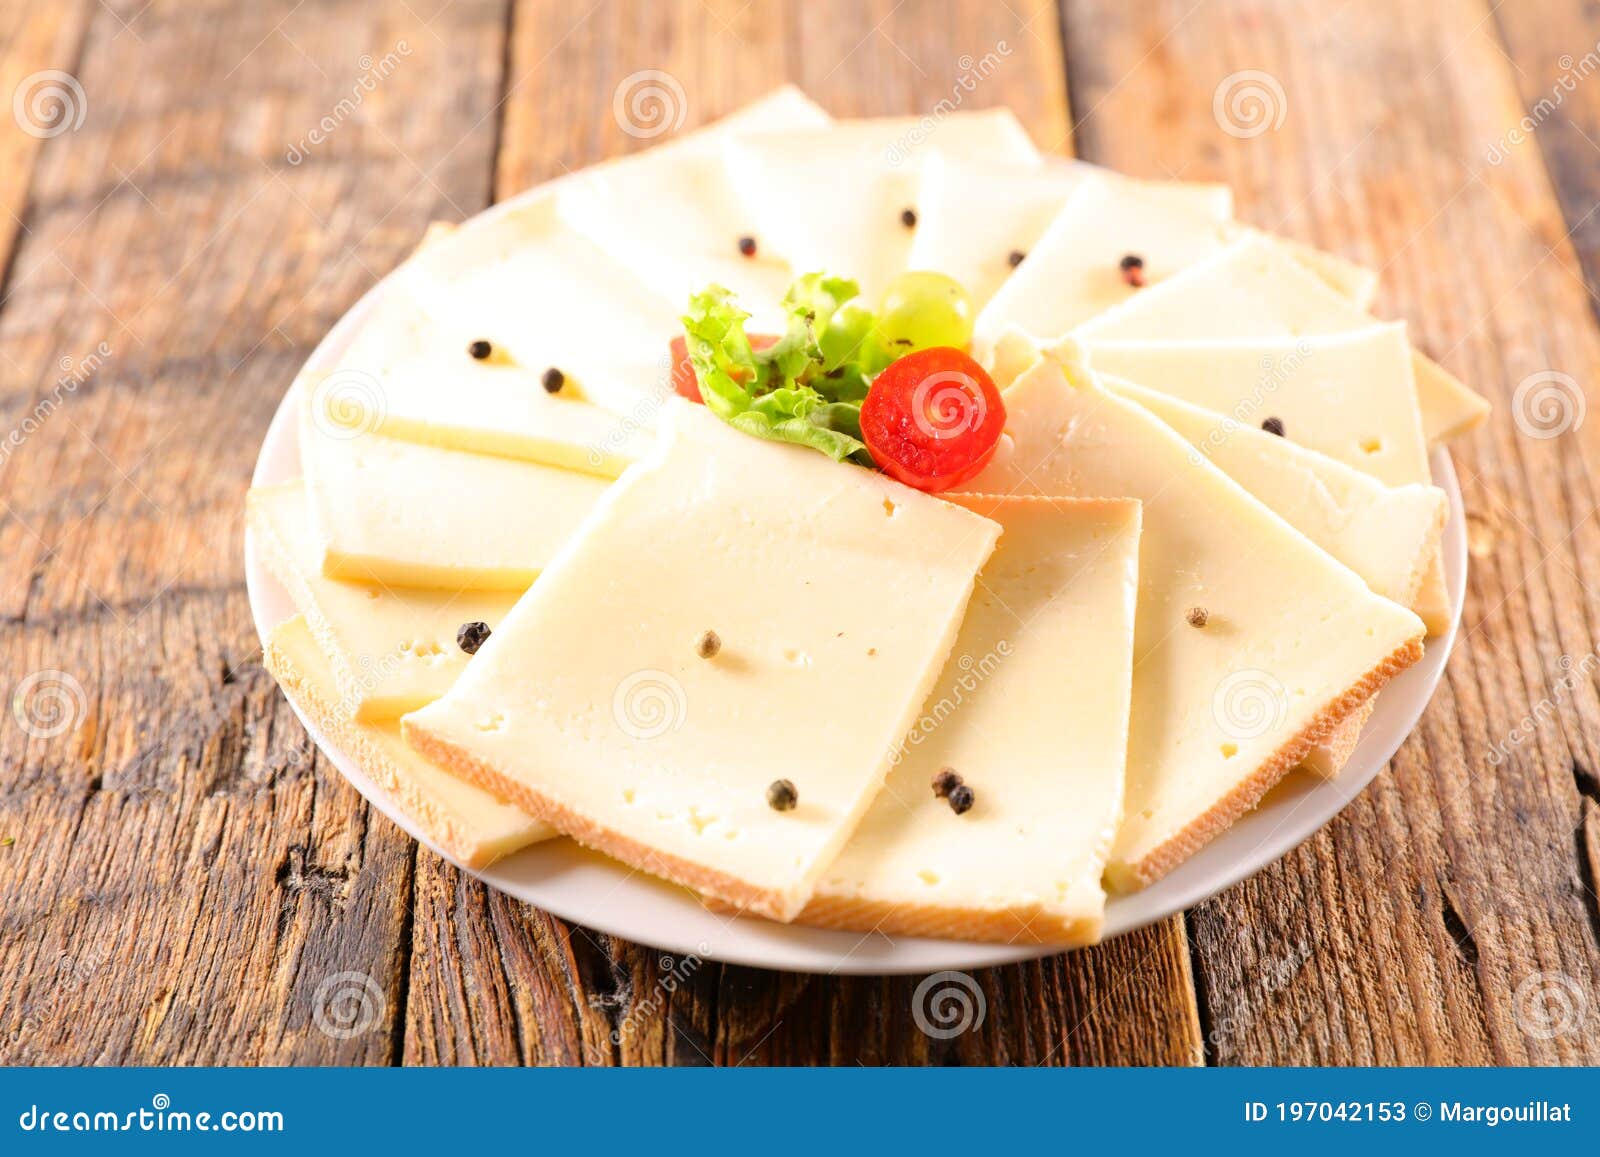 白底奶酪一块奶酪奶酪片图片下载 - 觅知网